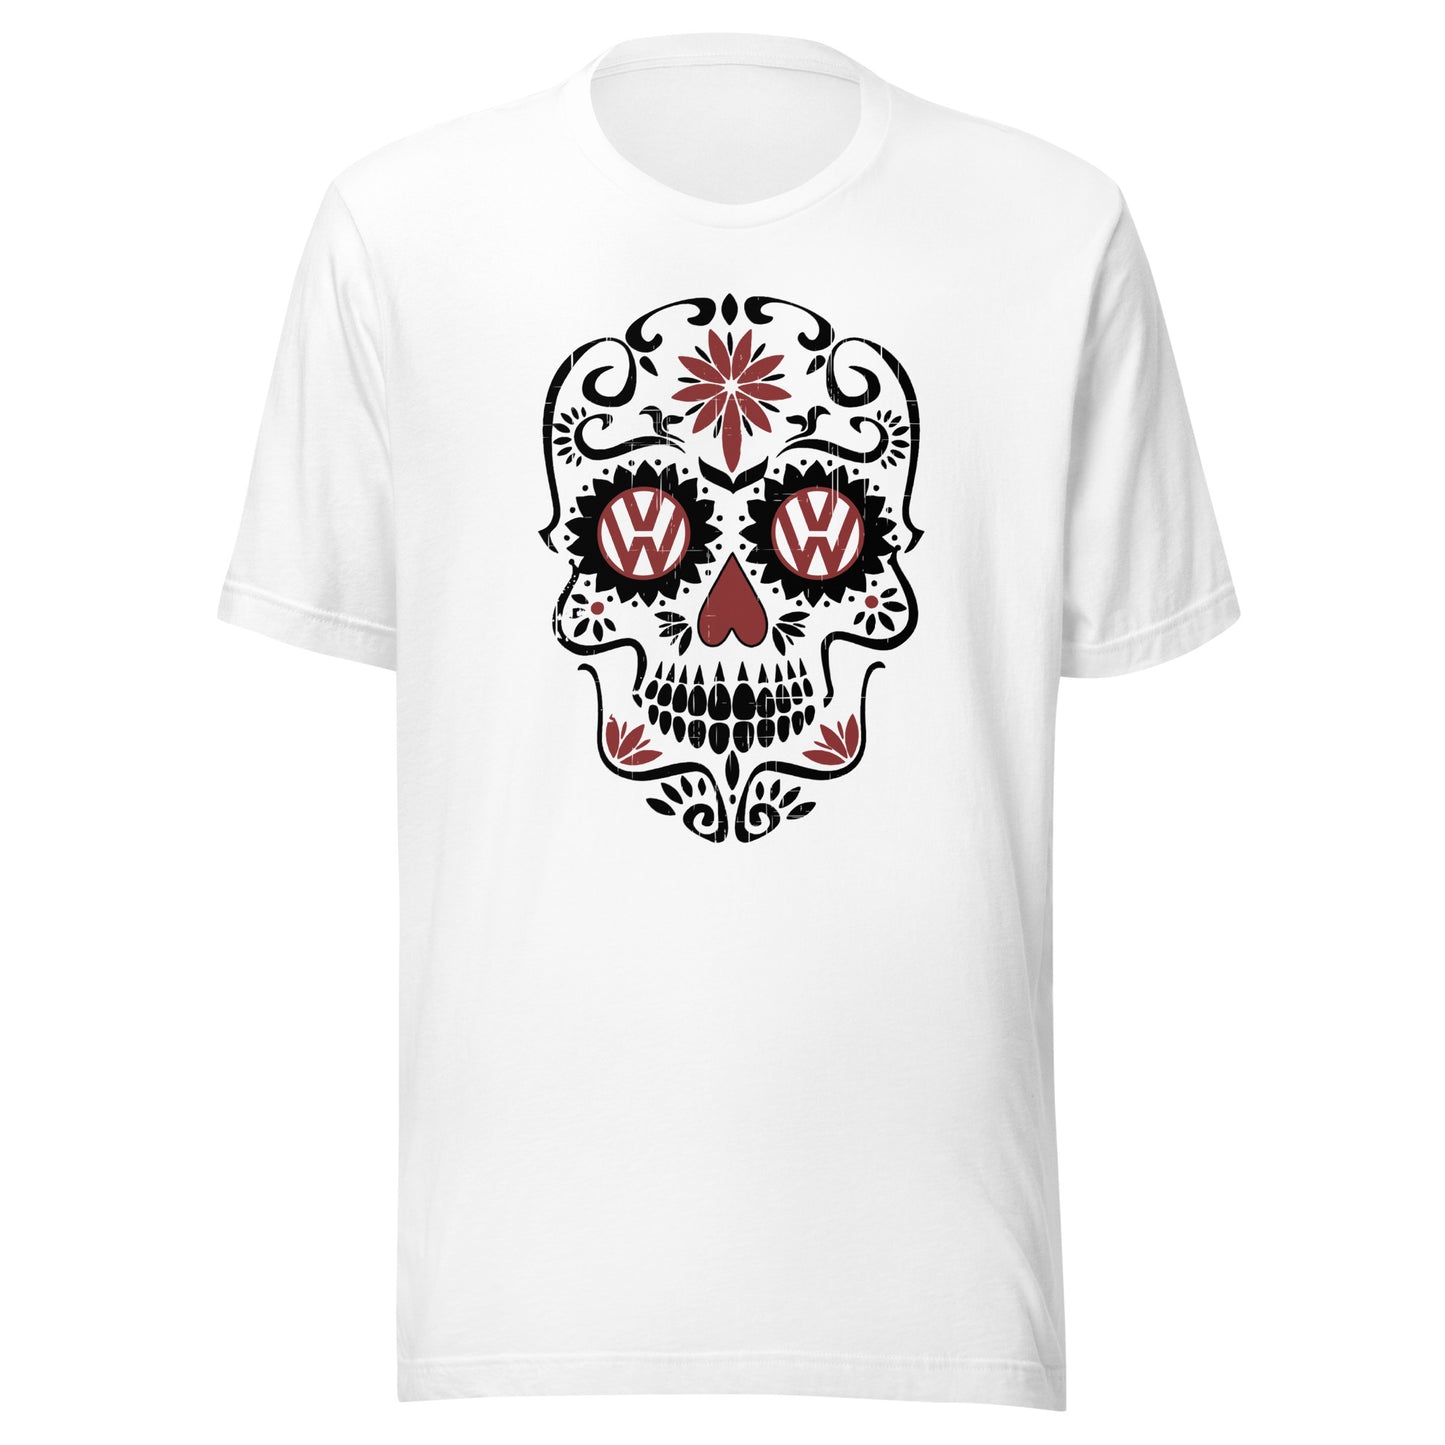 Vanwear Sugar Candy Skull VW Campervan T-Shirt - Black Outline